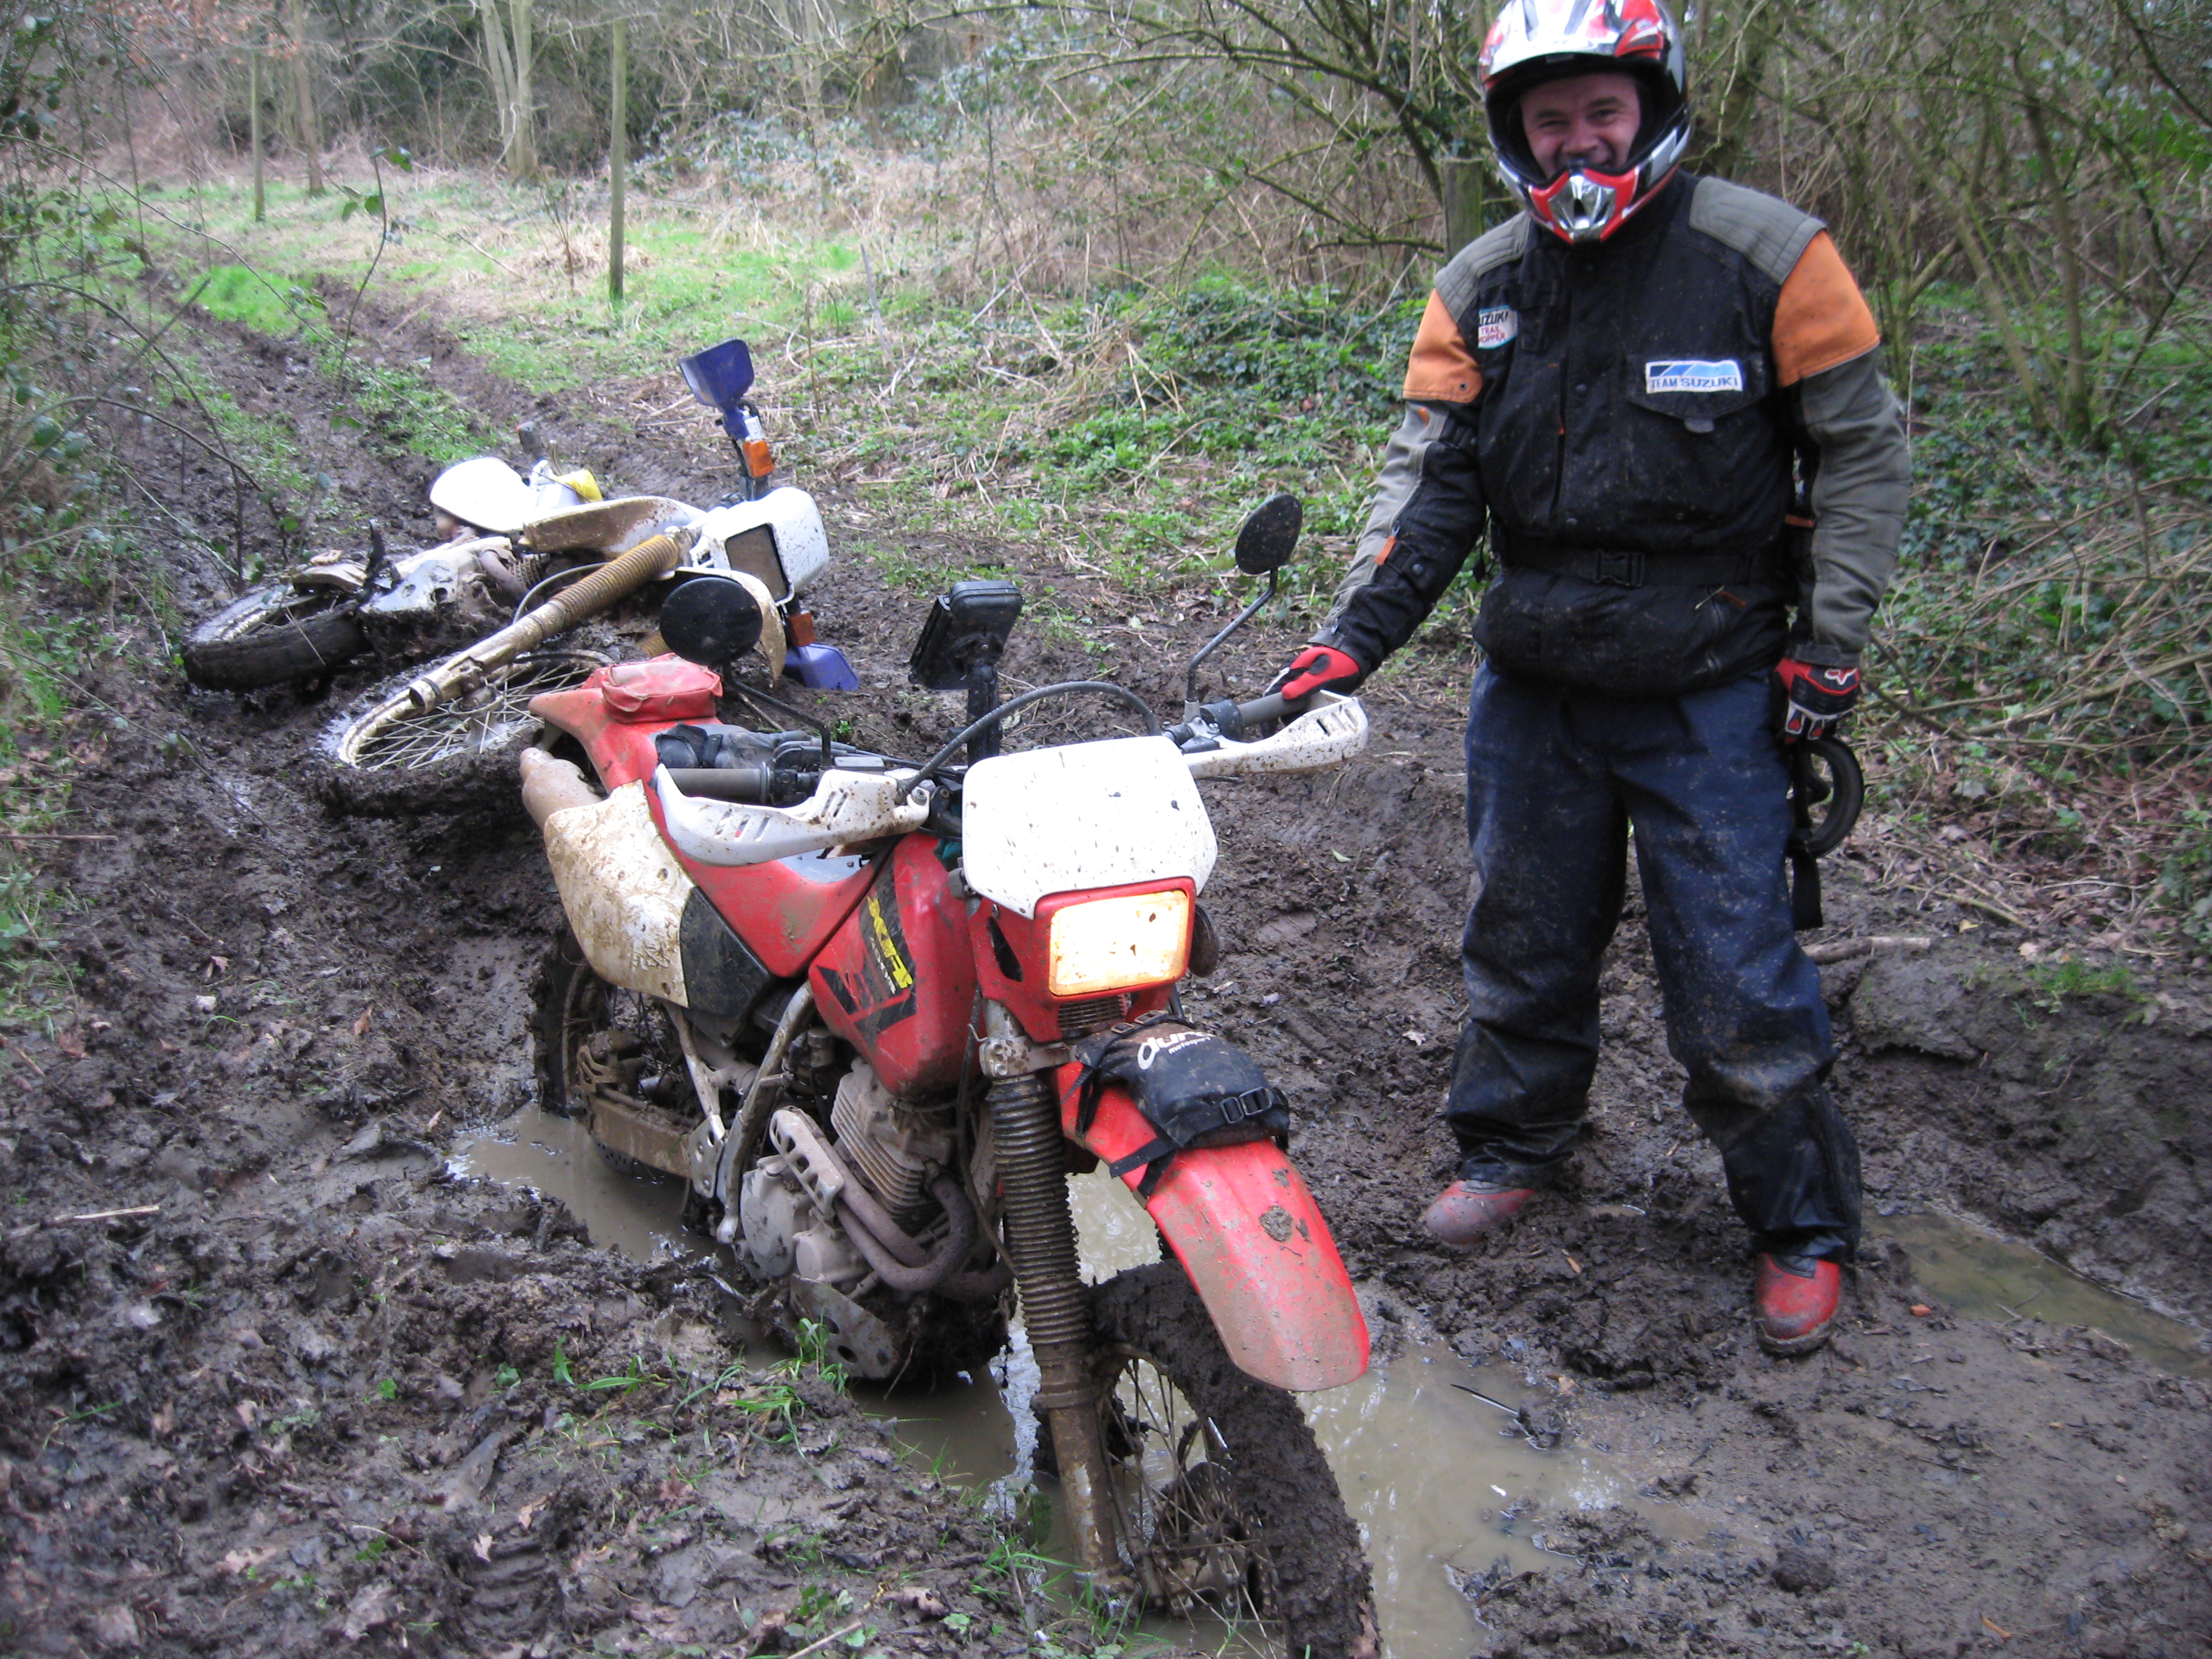 Honda XR400 Deep in mud